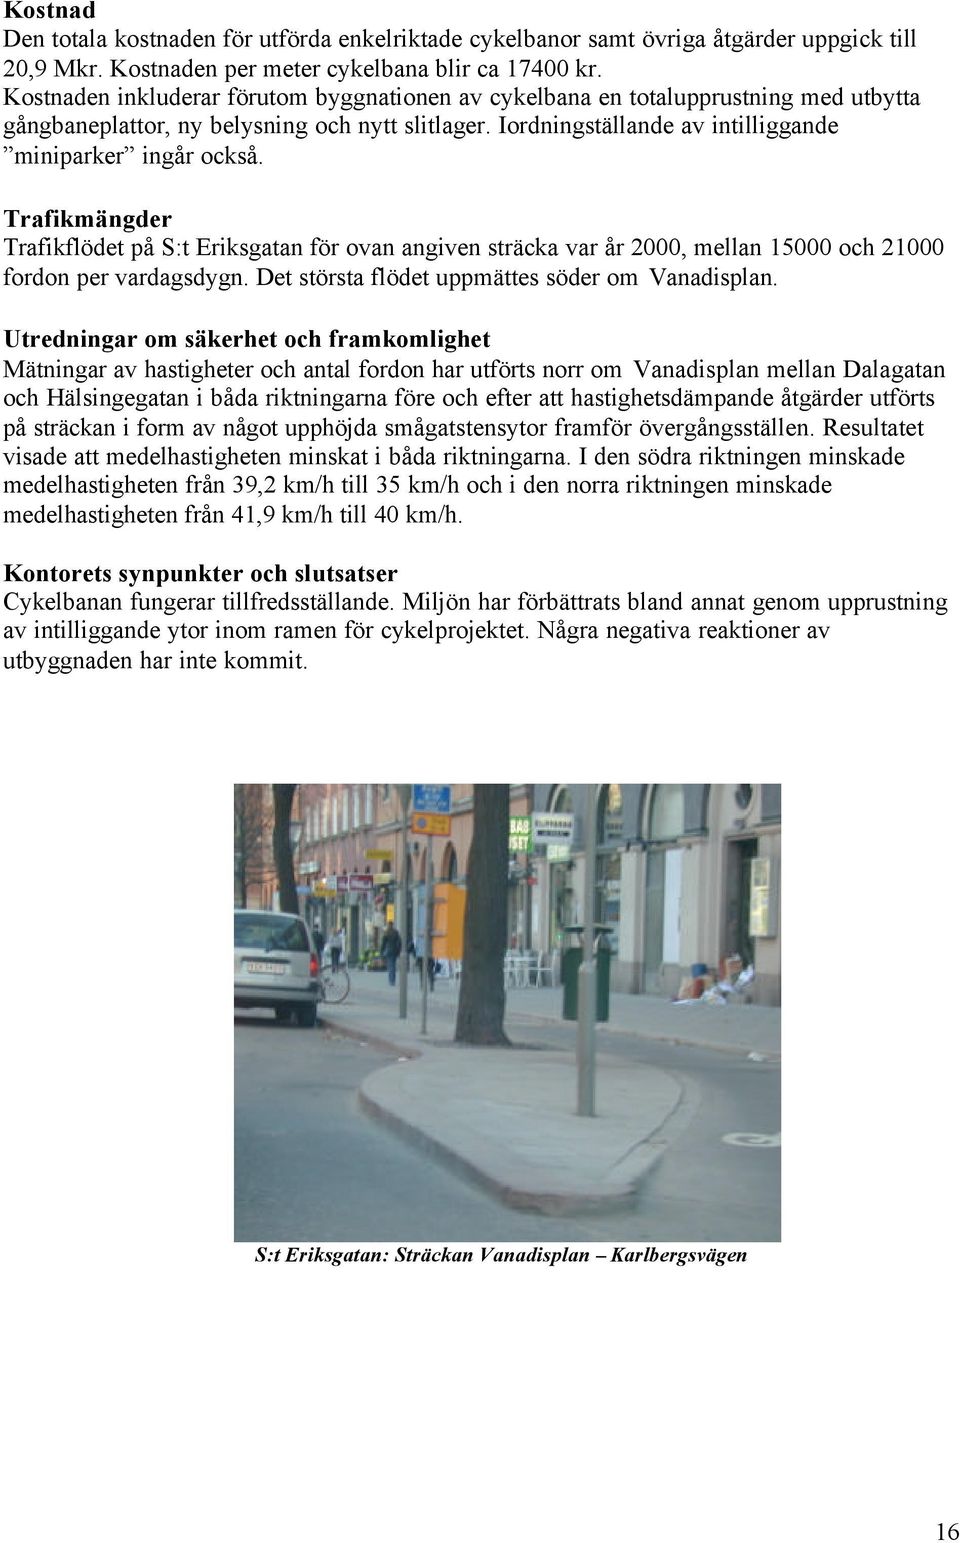 Trafikmängder Trafikflödet på S:t Eriksgatan för ovan angiven sträcka var år 2000, mellan 15000 och 21000 fordon per vardagsdygn. Det största flödet uppmättes söder om Vanadisplan.